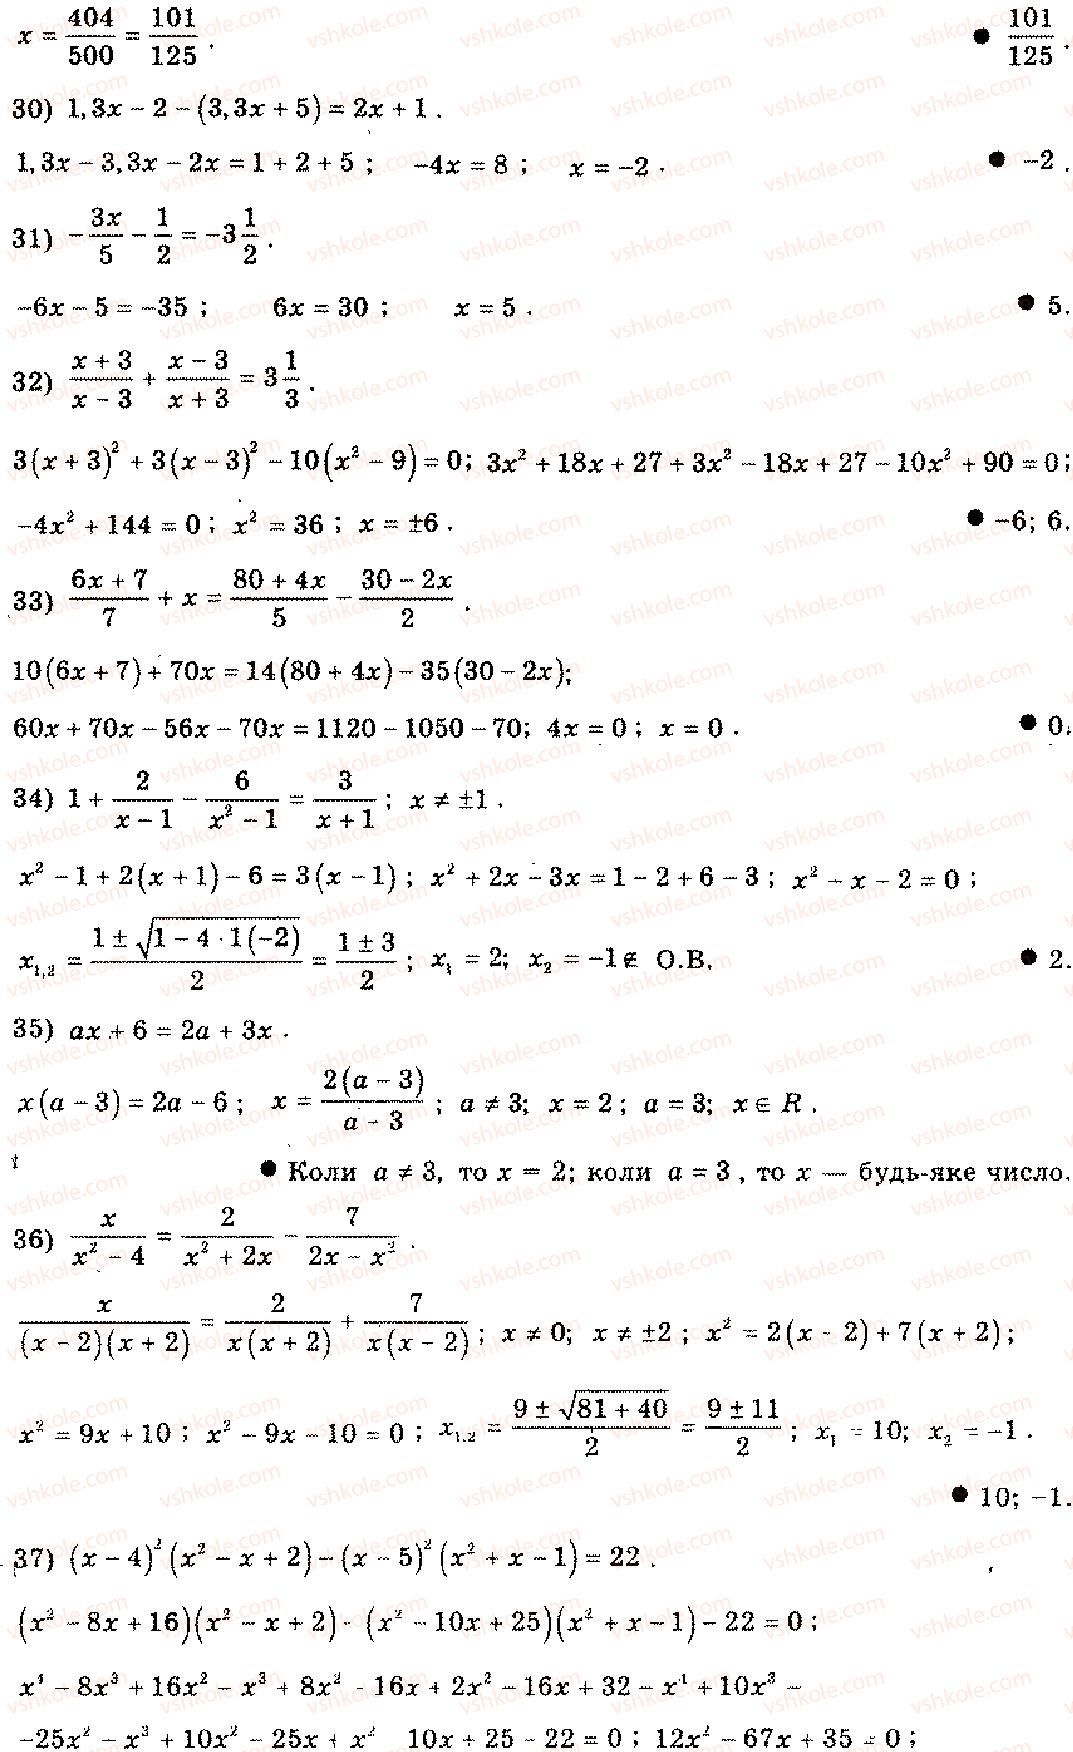 11-algebra-mi-shkil-zi-slepkan-os-dubinchuk-2006--rozdil-15-povtorennya-kursu-algebri-osnovnoyi-shkoli-3-1-rnd1729.jpg